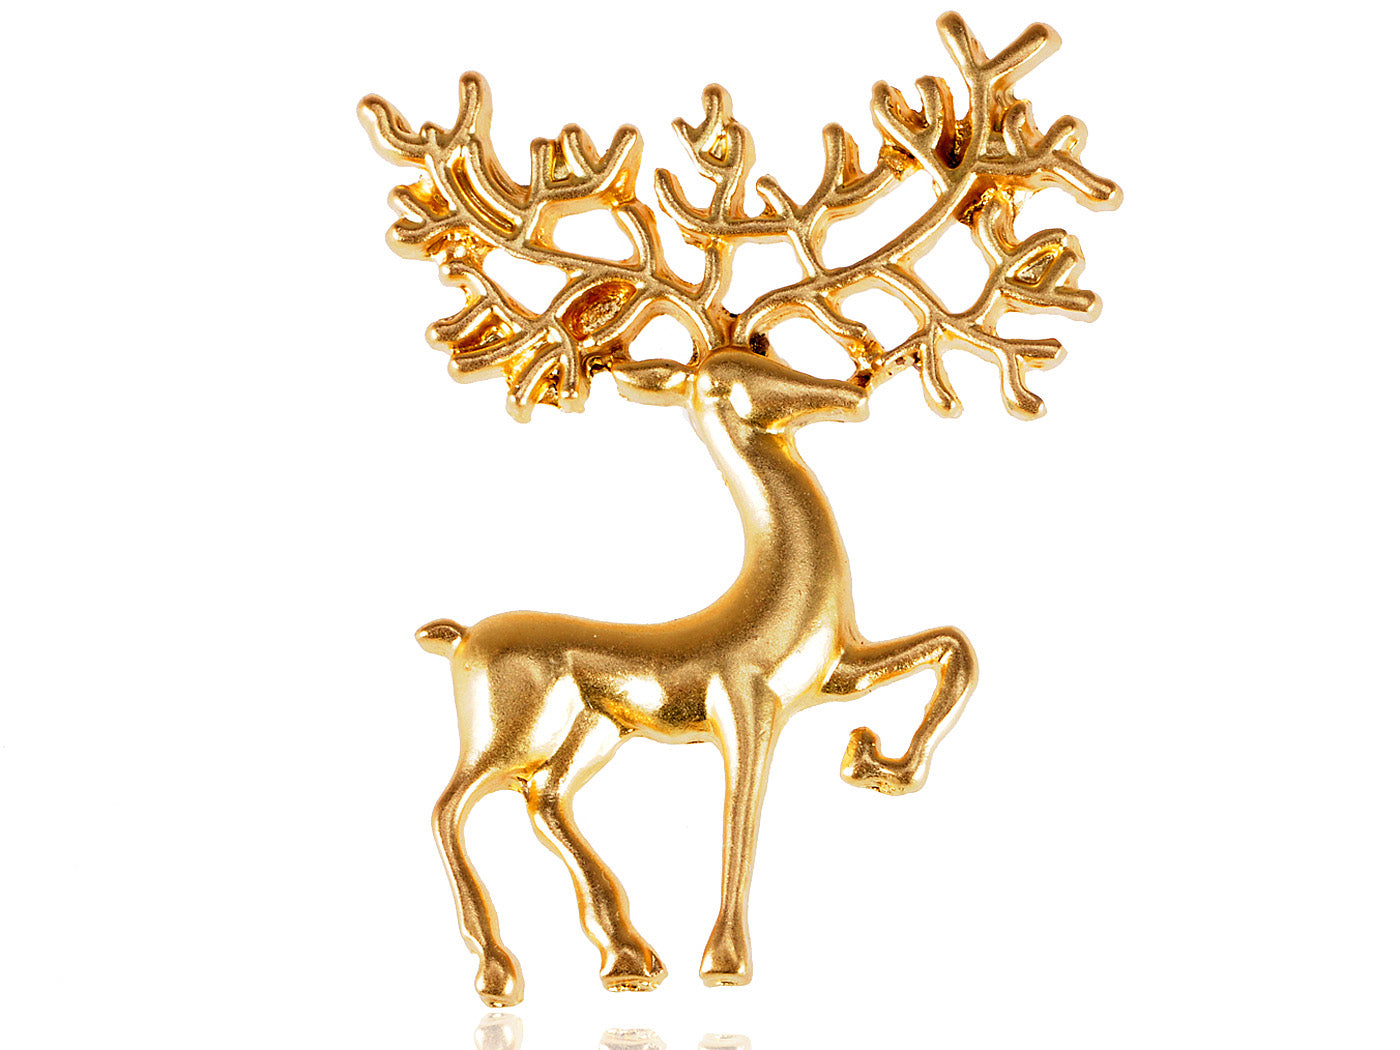 Big Horned Reindeer Single Pin Brooch